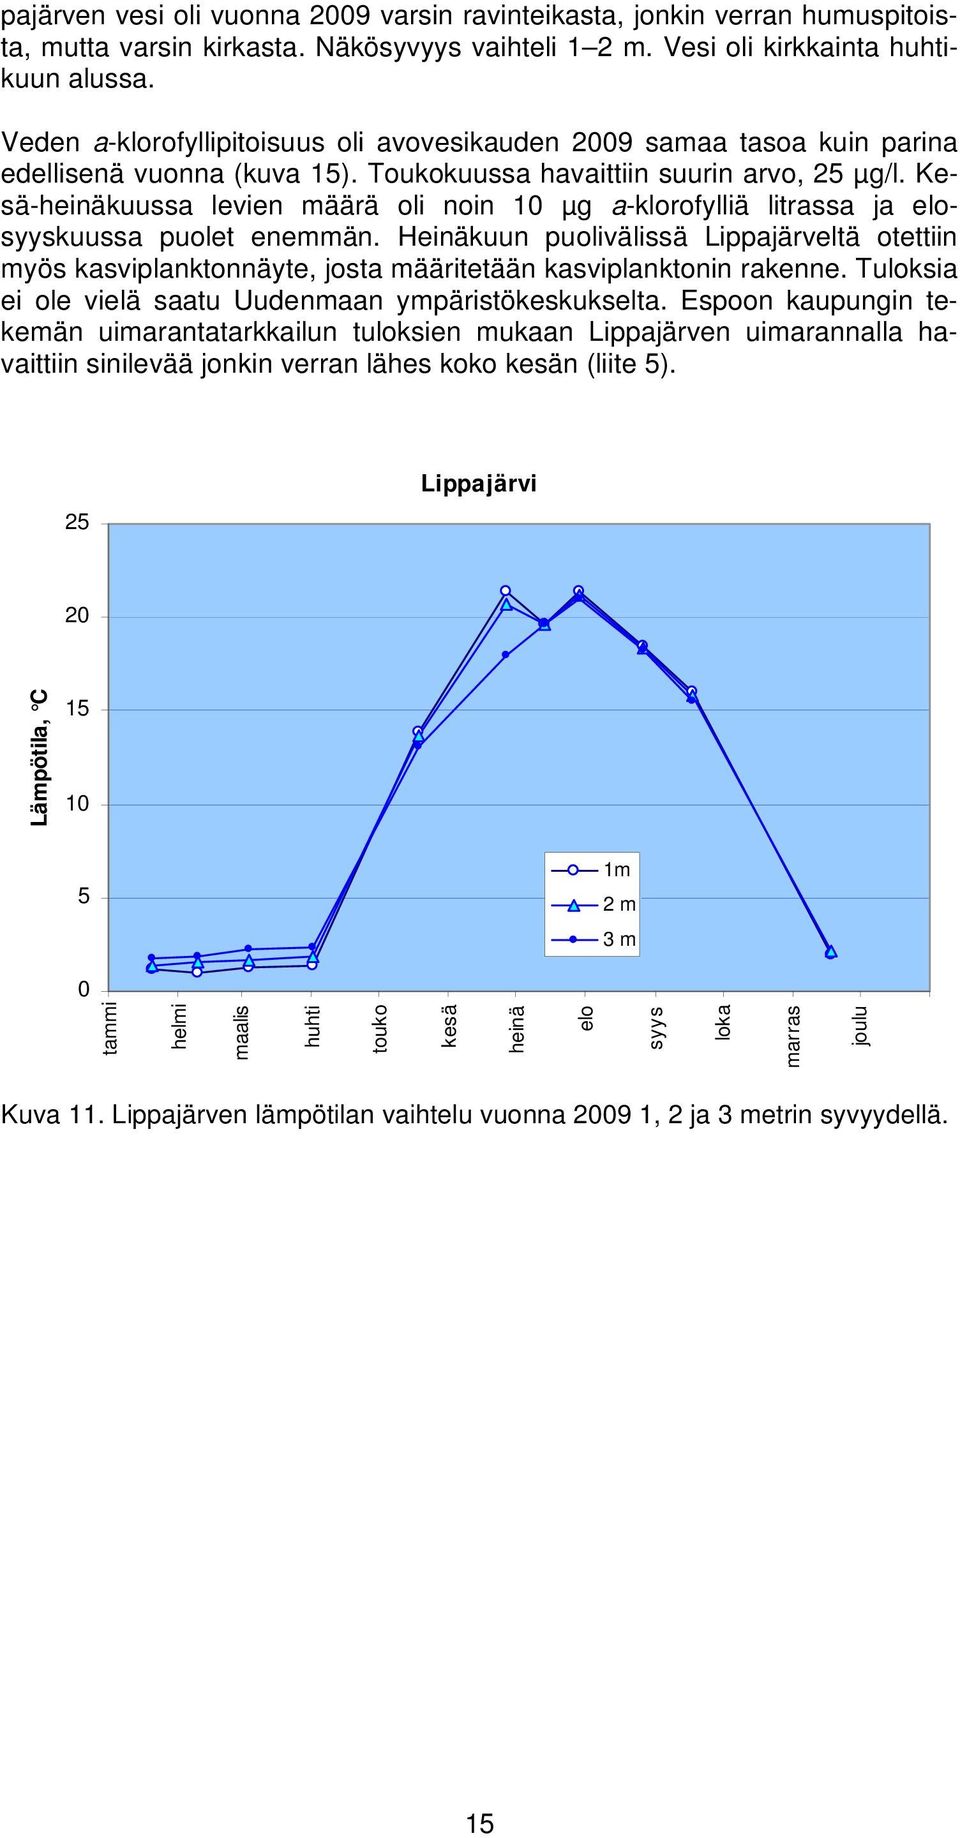 Kesä-heinäkuussa levien määrä oli noin 1 µg a-klorofylliä litrassa ja elosyyskuussa puolet enemmän.